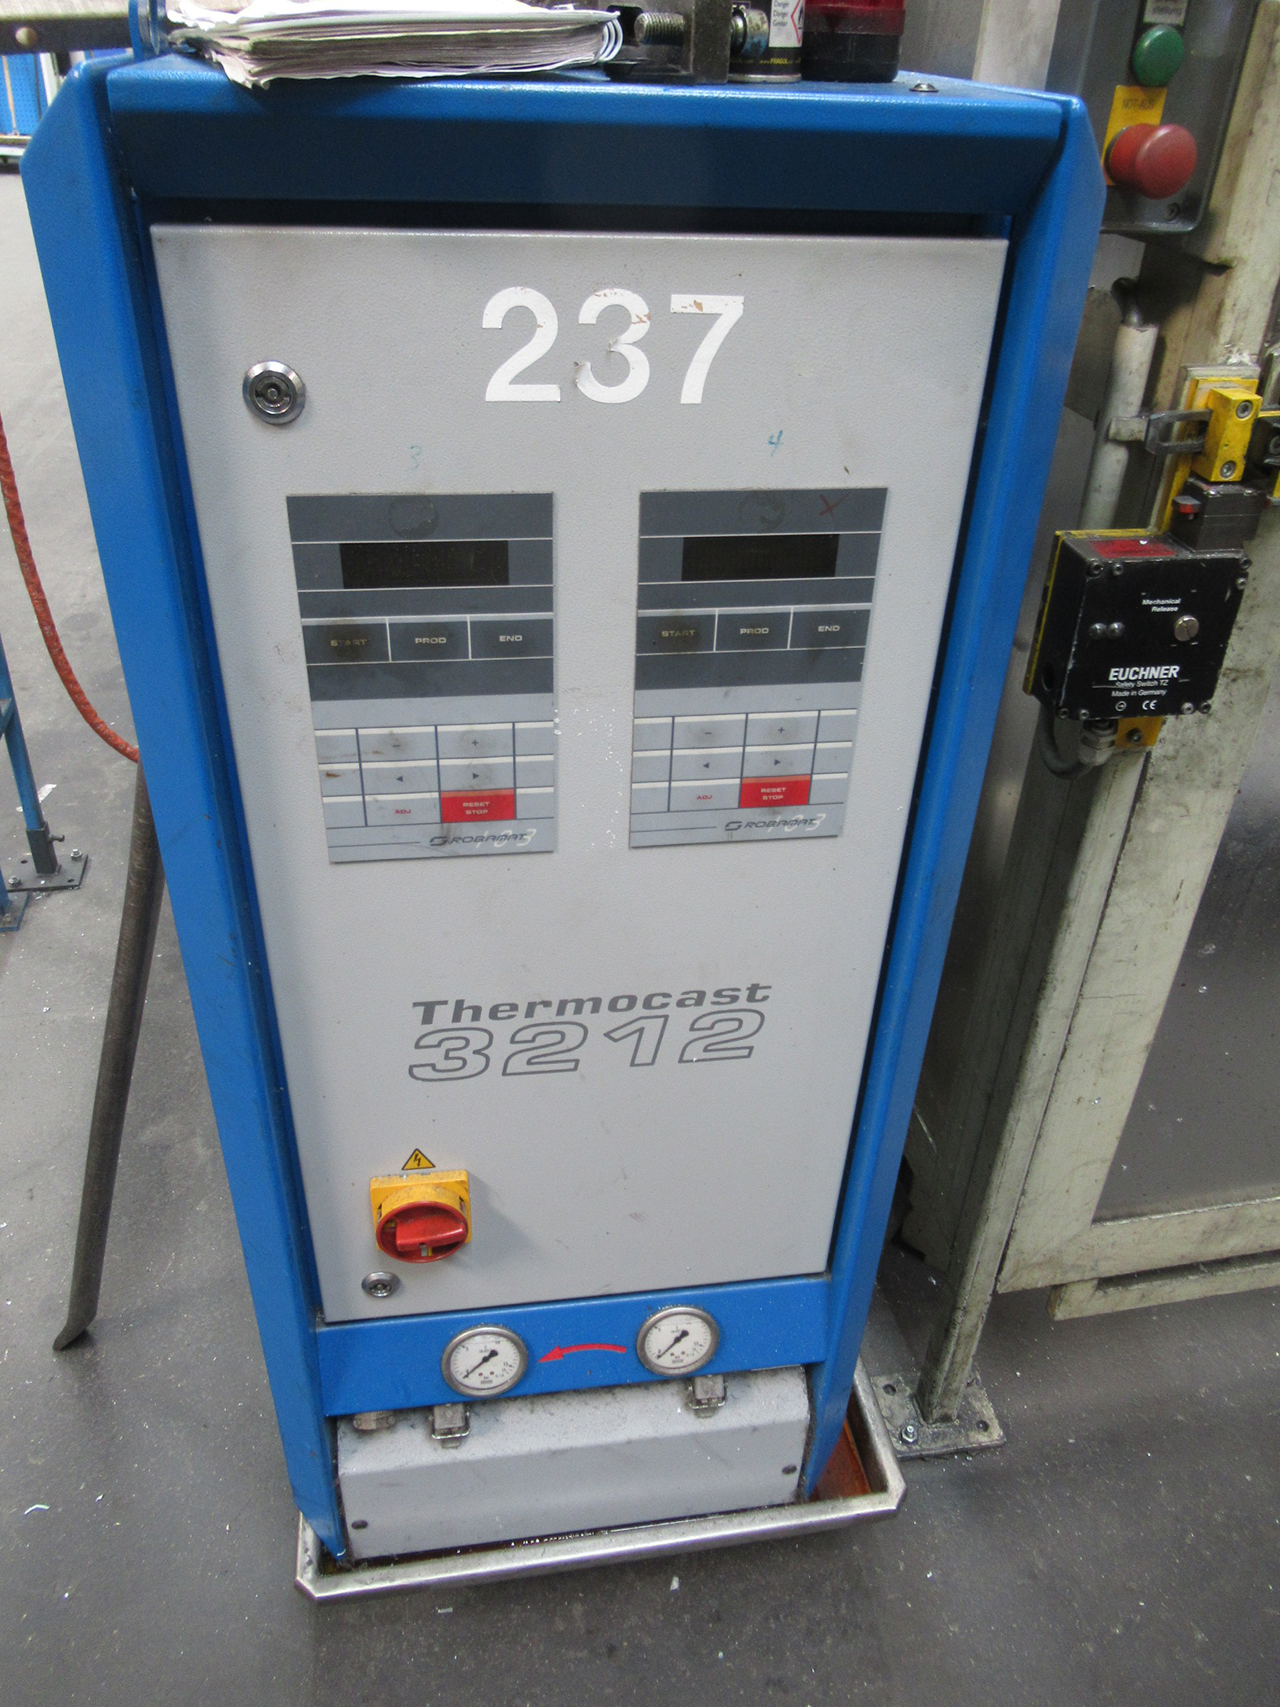 Robamat Thermocast 3212 sıcaklık kontrol ünitesi ZU2110, kullanılmış